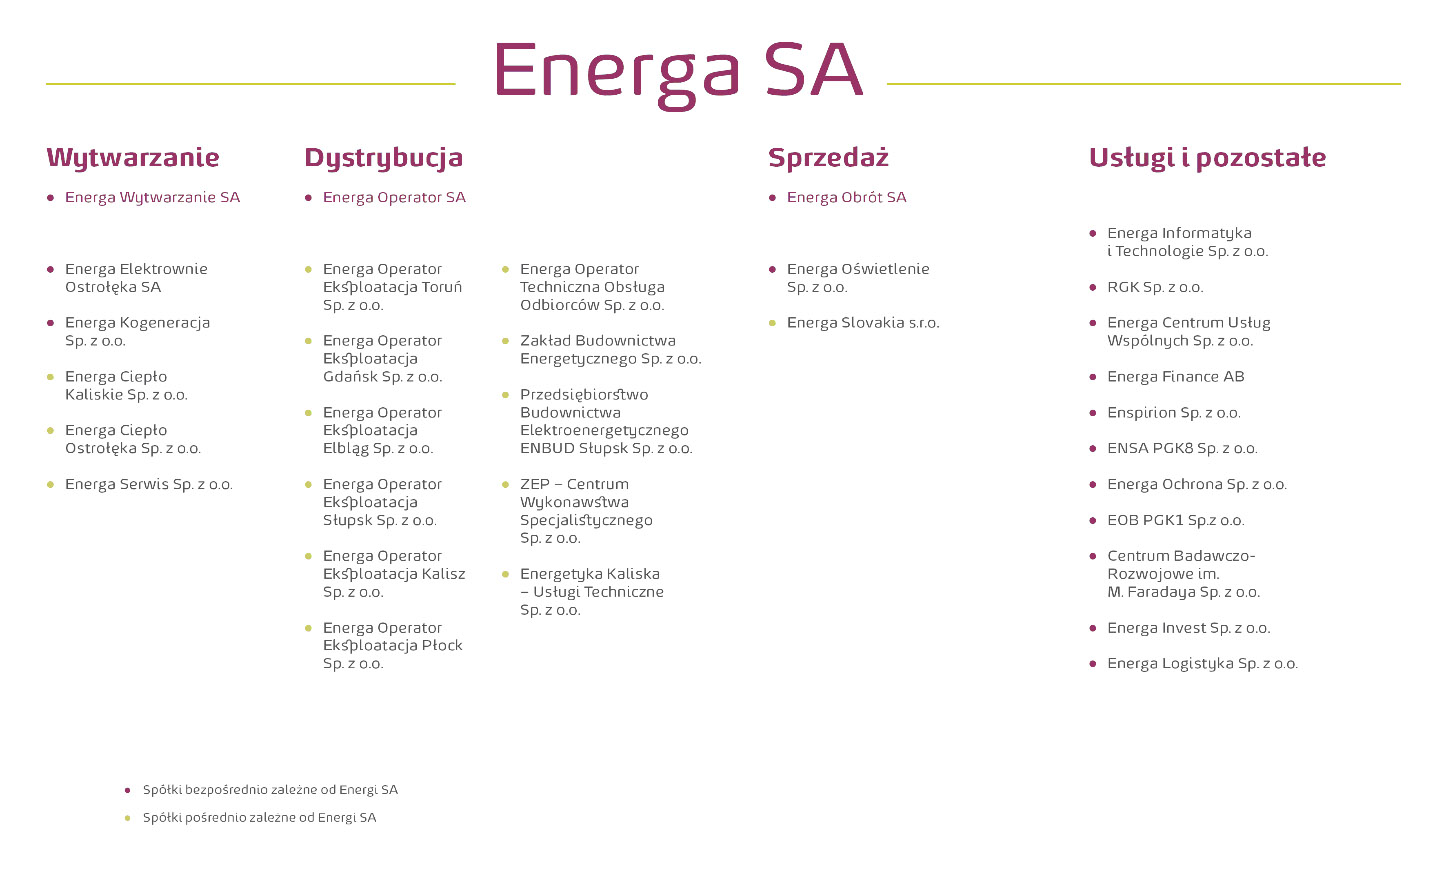 Uproszczony schemat struktury organizacyjnej Grupy ENERGA